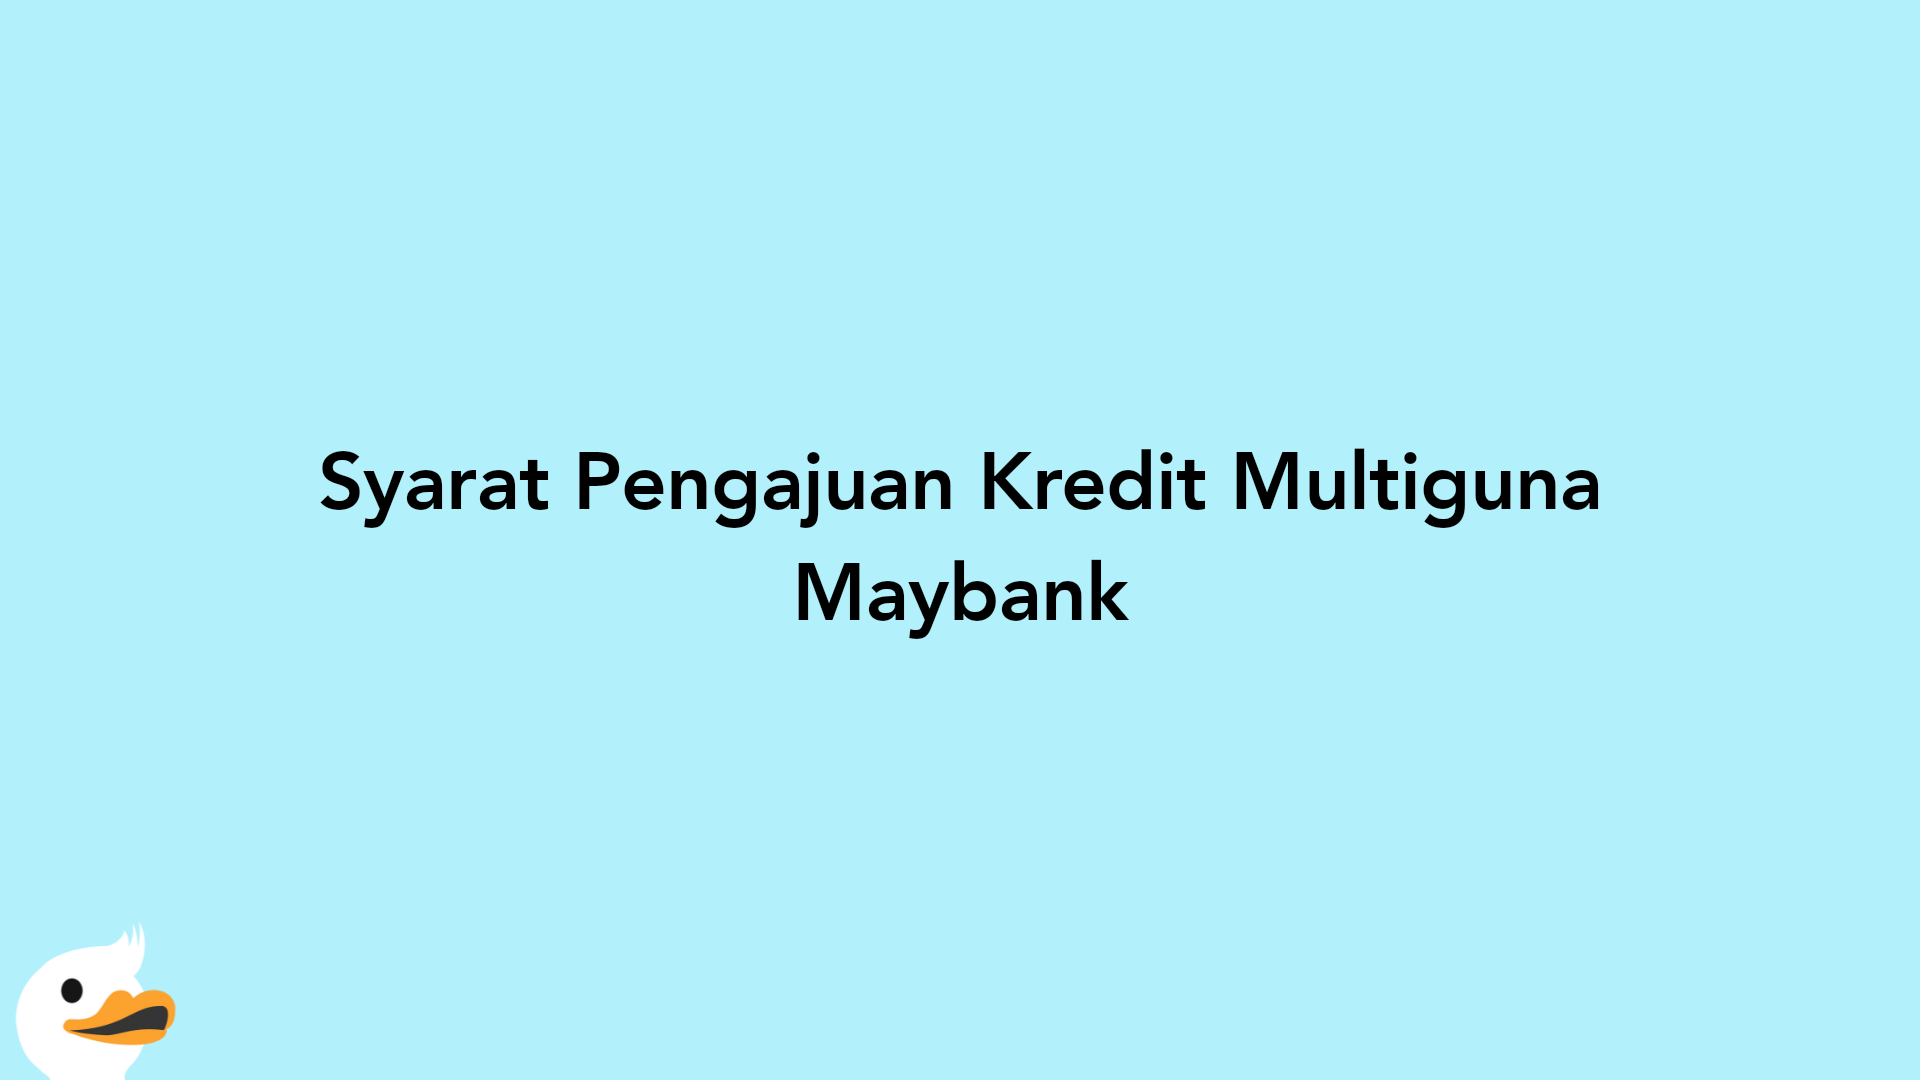 Syarat Pengajuan Kredit Multiguna Maybank